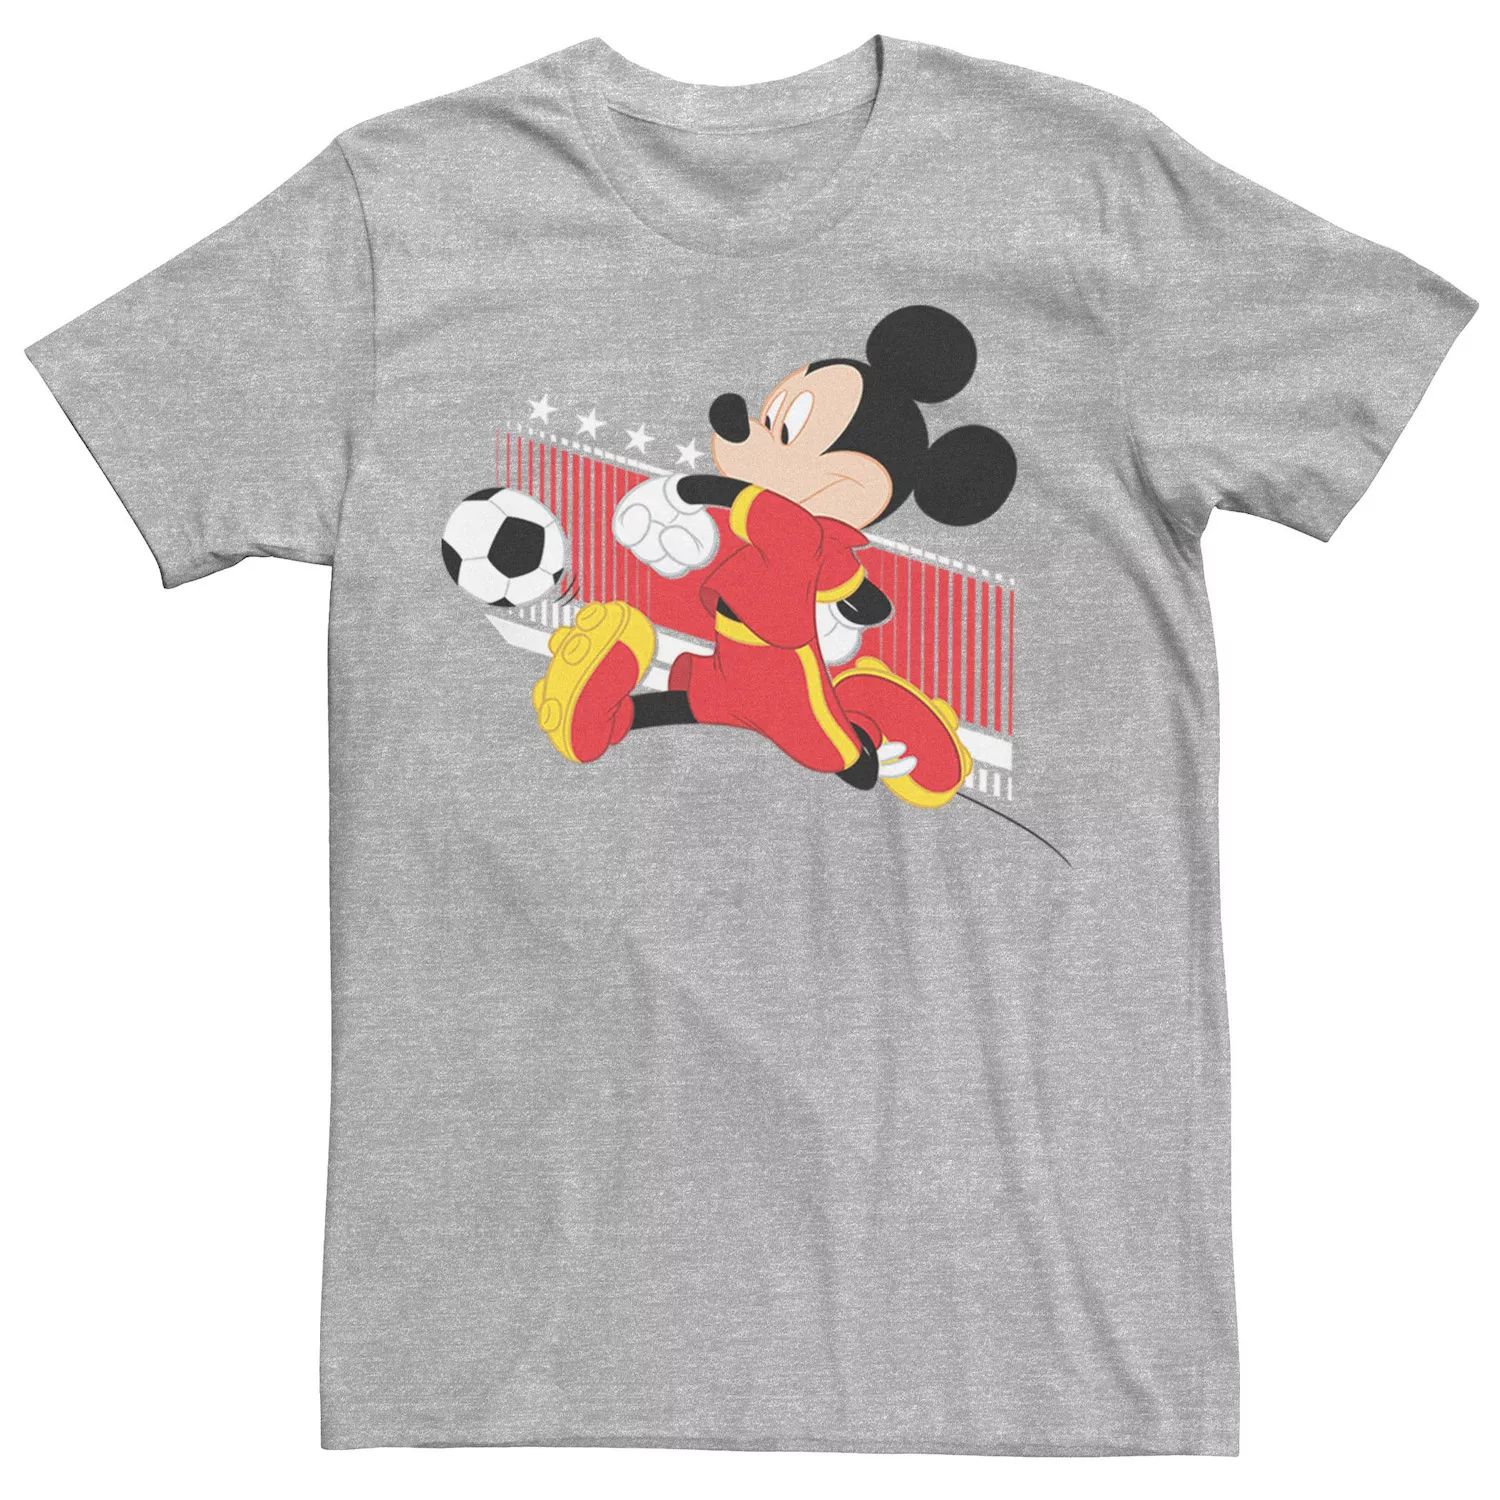 Мужская футболка с портретом Микки Мауса, Бельгия, футбольная форма Disney мужская футболка с изображением микки мауса бразильская футбольная форма портретная футболка disney